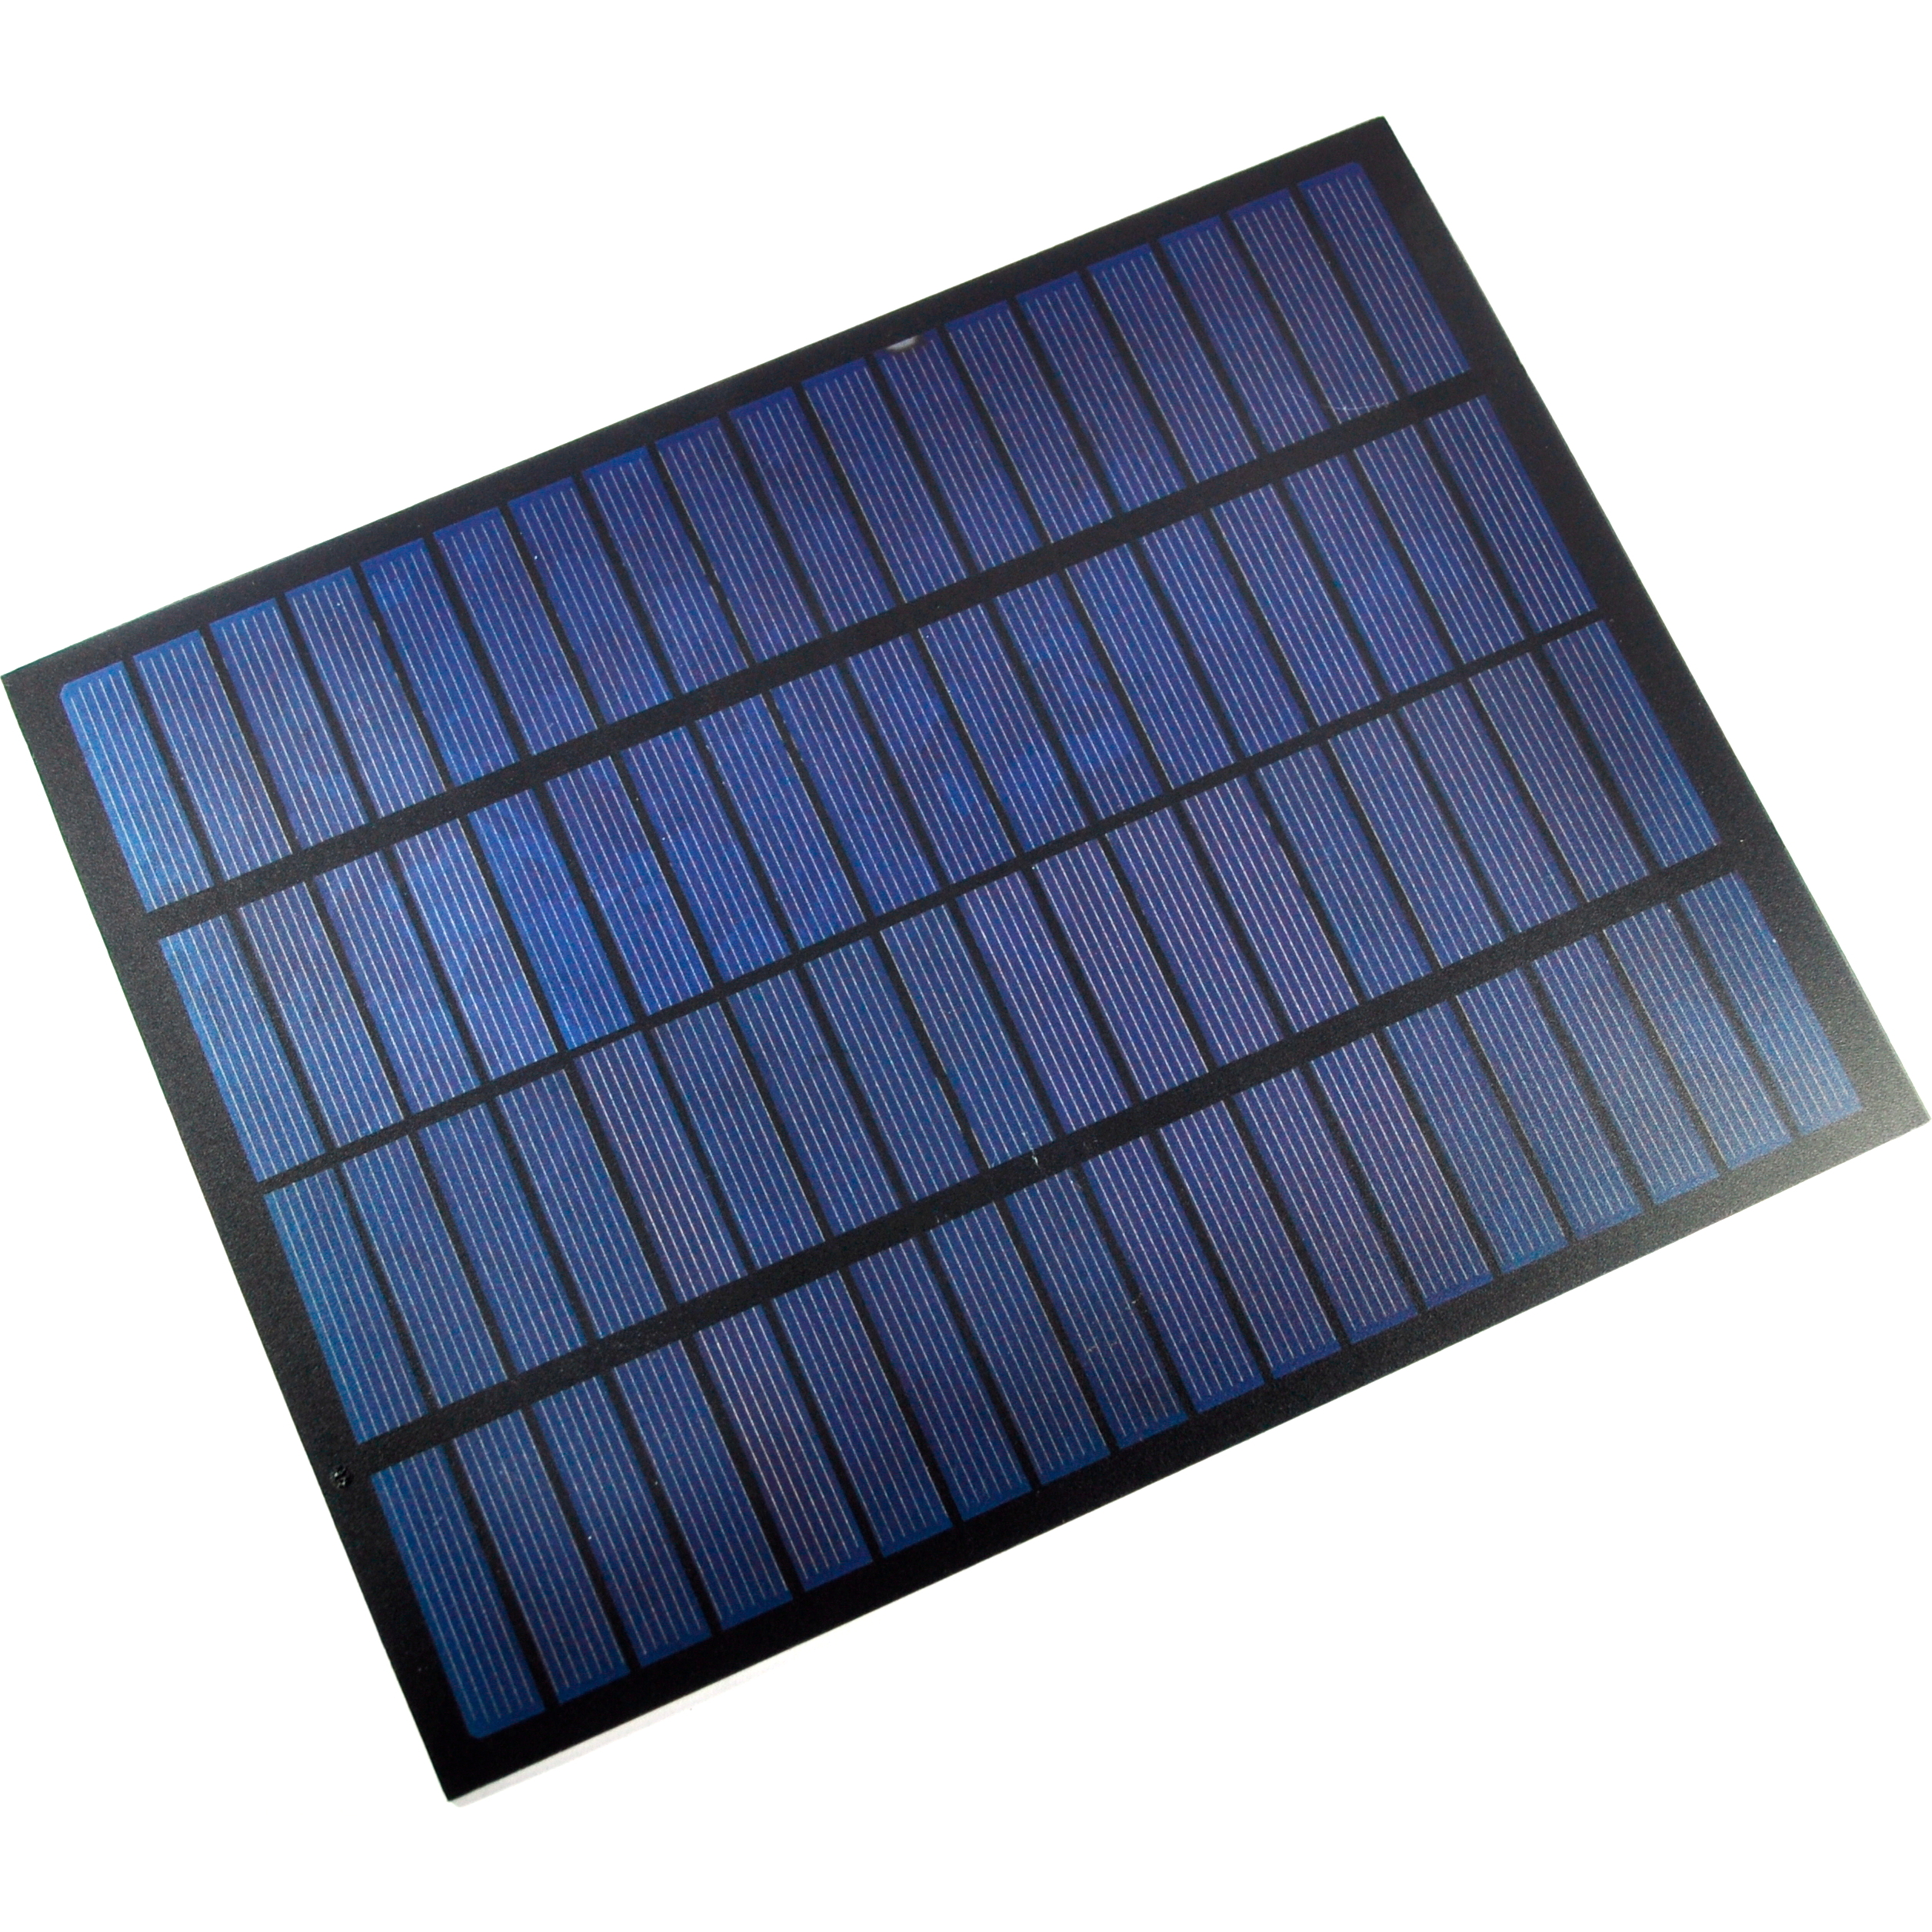 Solar Panel Image 1